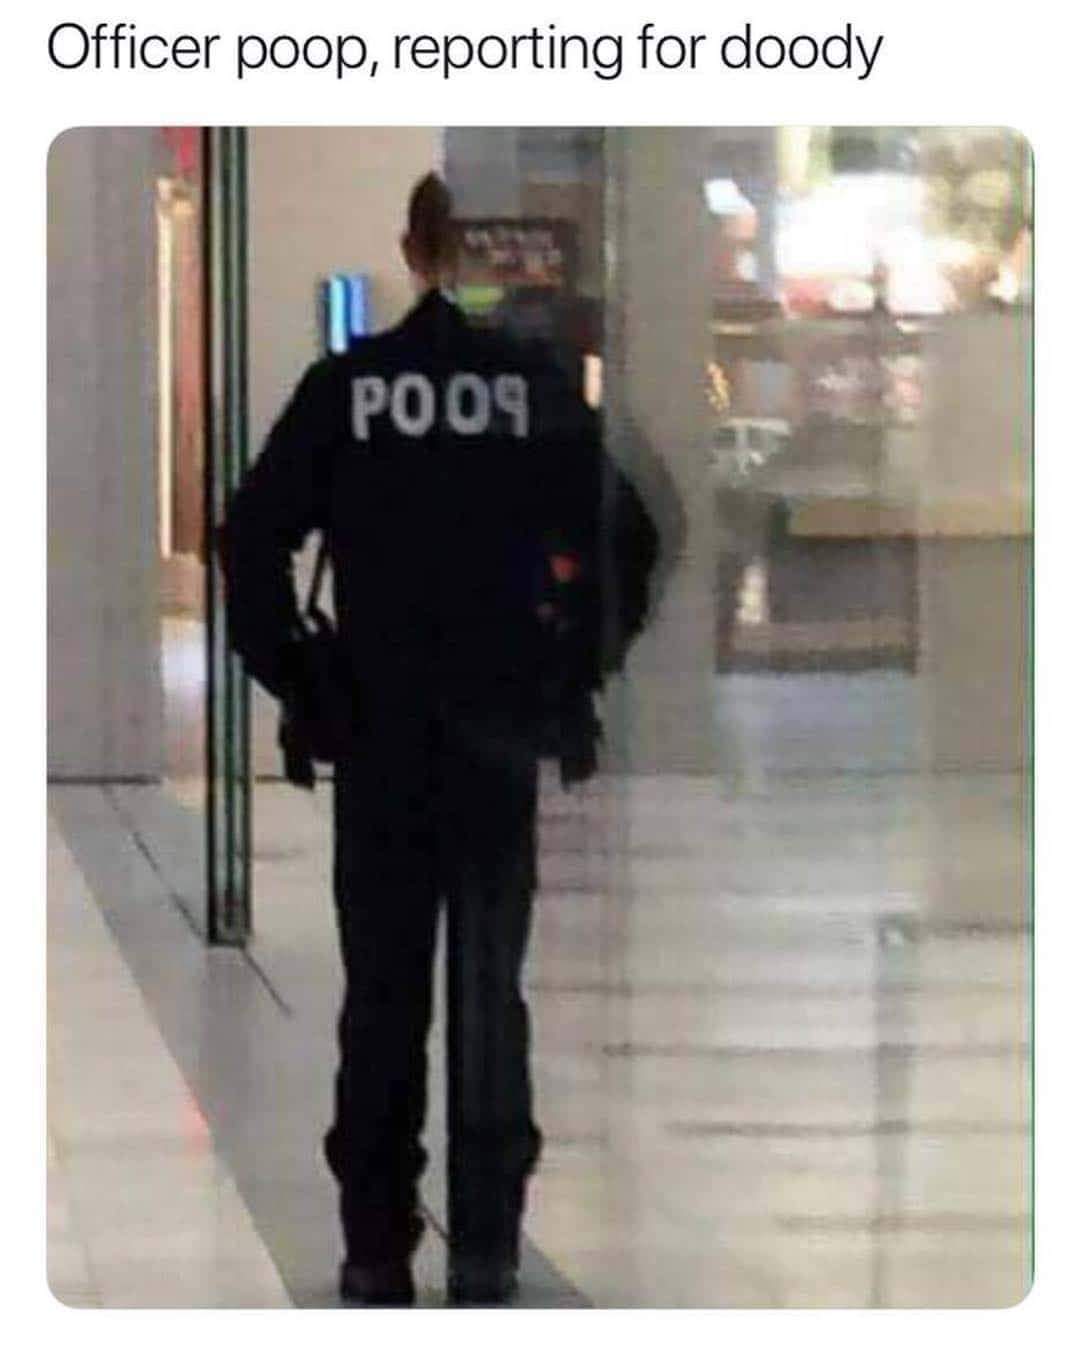 officer poop reporting for doody - Officer poop, reporting for doody Poon